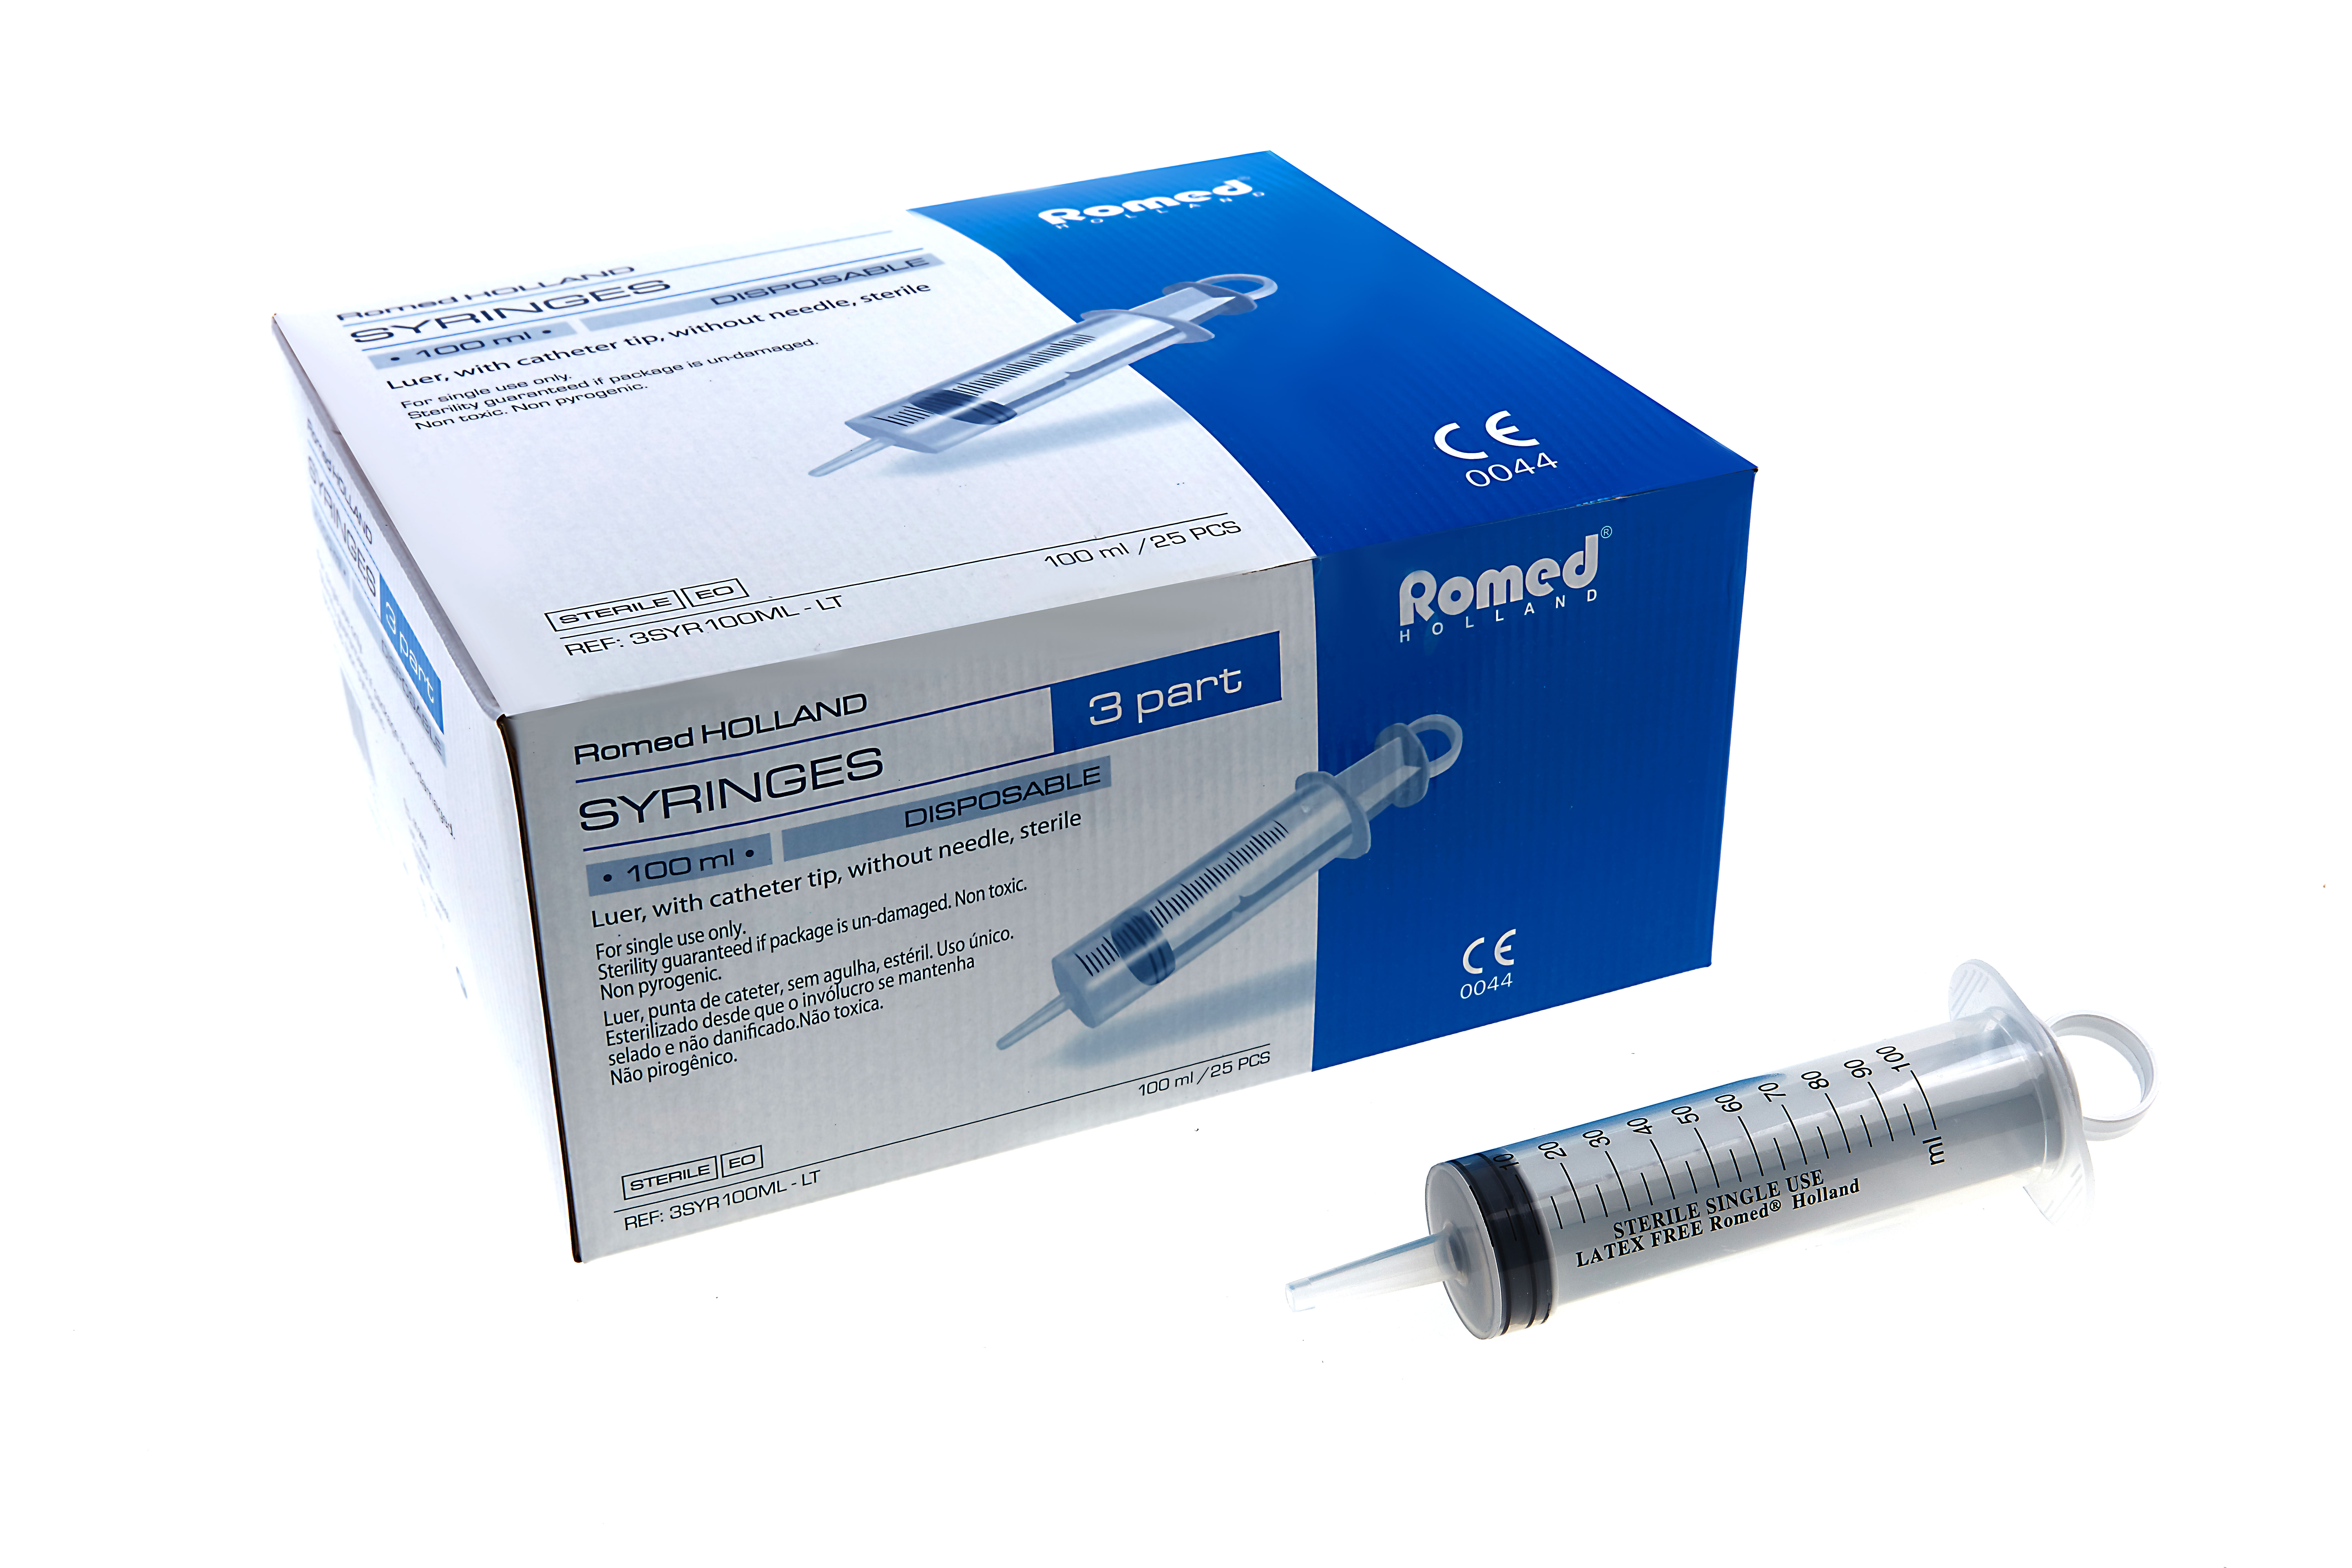 3SYR100ML-LT Romed 3-teilige Spritzen 100 ml ohne Kanüle, katheter tip, pro Stück steril verpackt, pro 25 Stück in einer Schachtel, 4 x 25 Stück = 100 Stück im Karton.